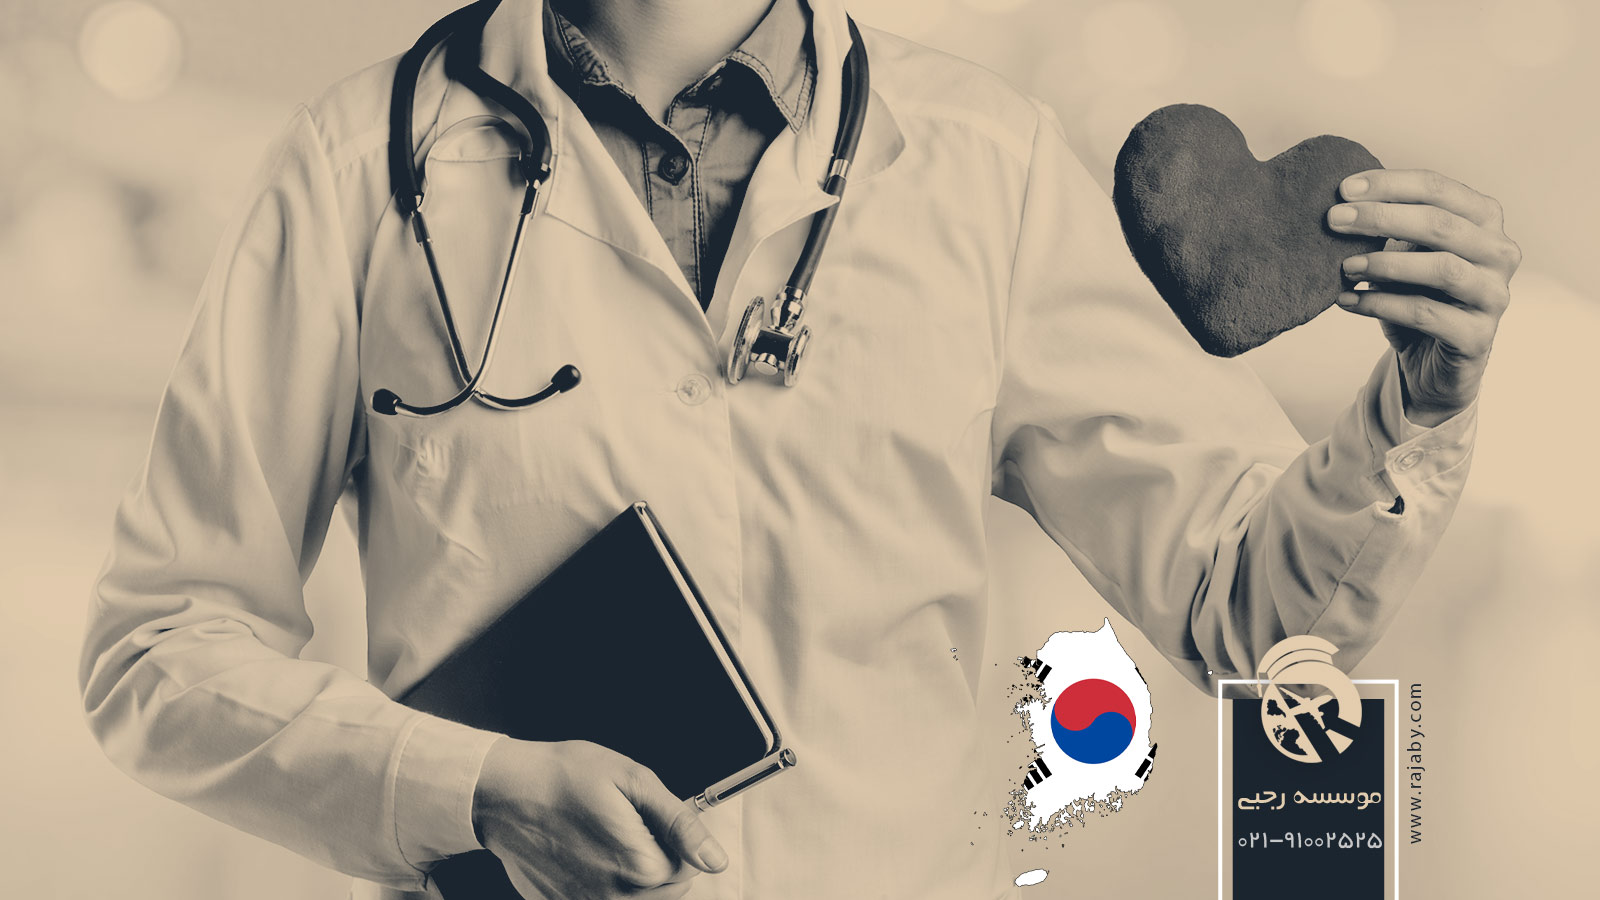 تحصیل پزشکی و دندانپزشکی در کره جنوبی